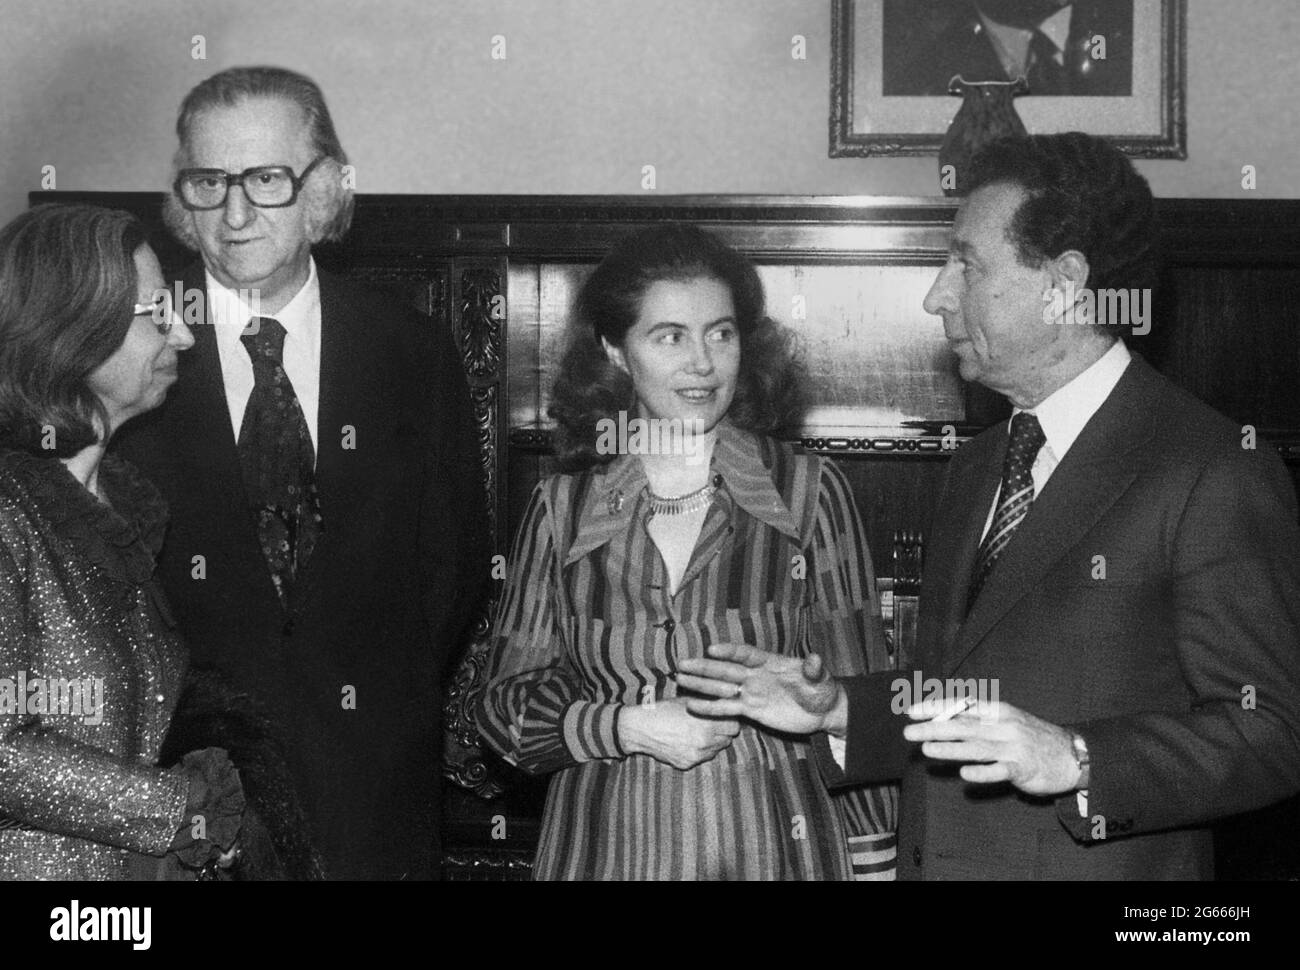 Bukarest, Rumänien, 1980. Zwei große Persönlichkeiten der rumänischen Kultur: Der Maler Corneliu Baba (links) und der Musiker Ion Voicu (rechts) mit ihren Frauen. Stockfoto